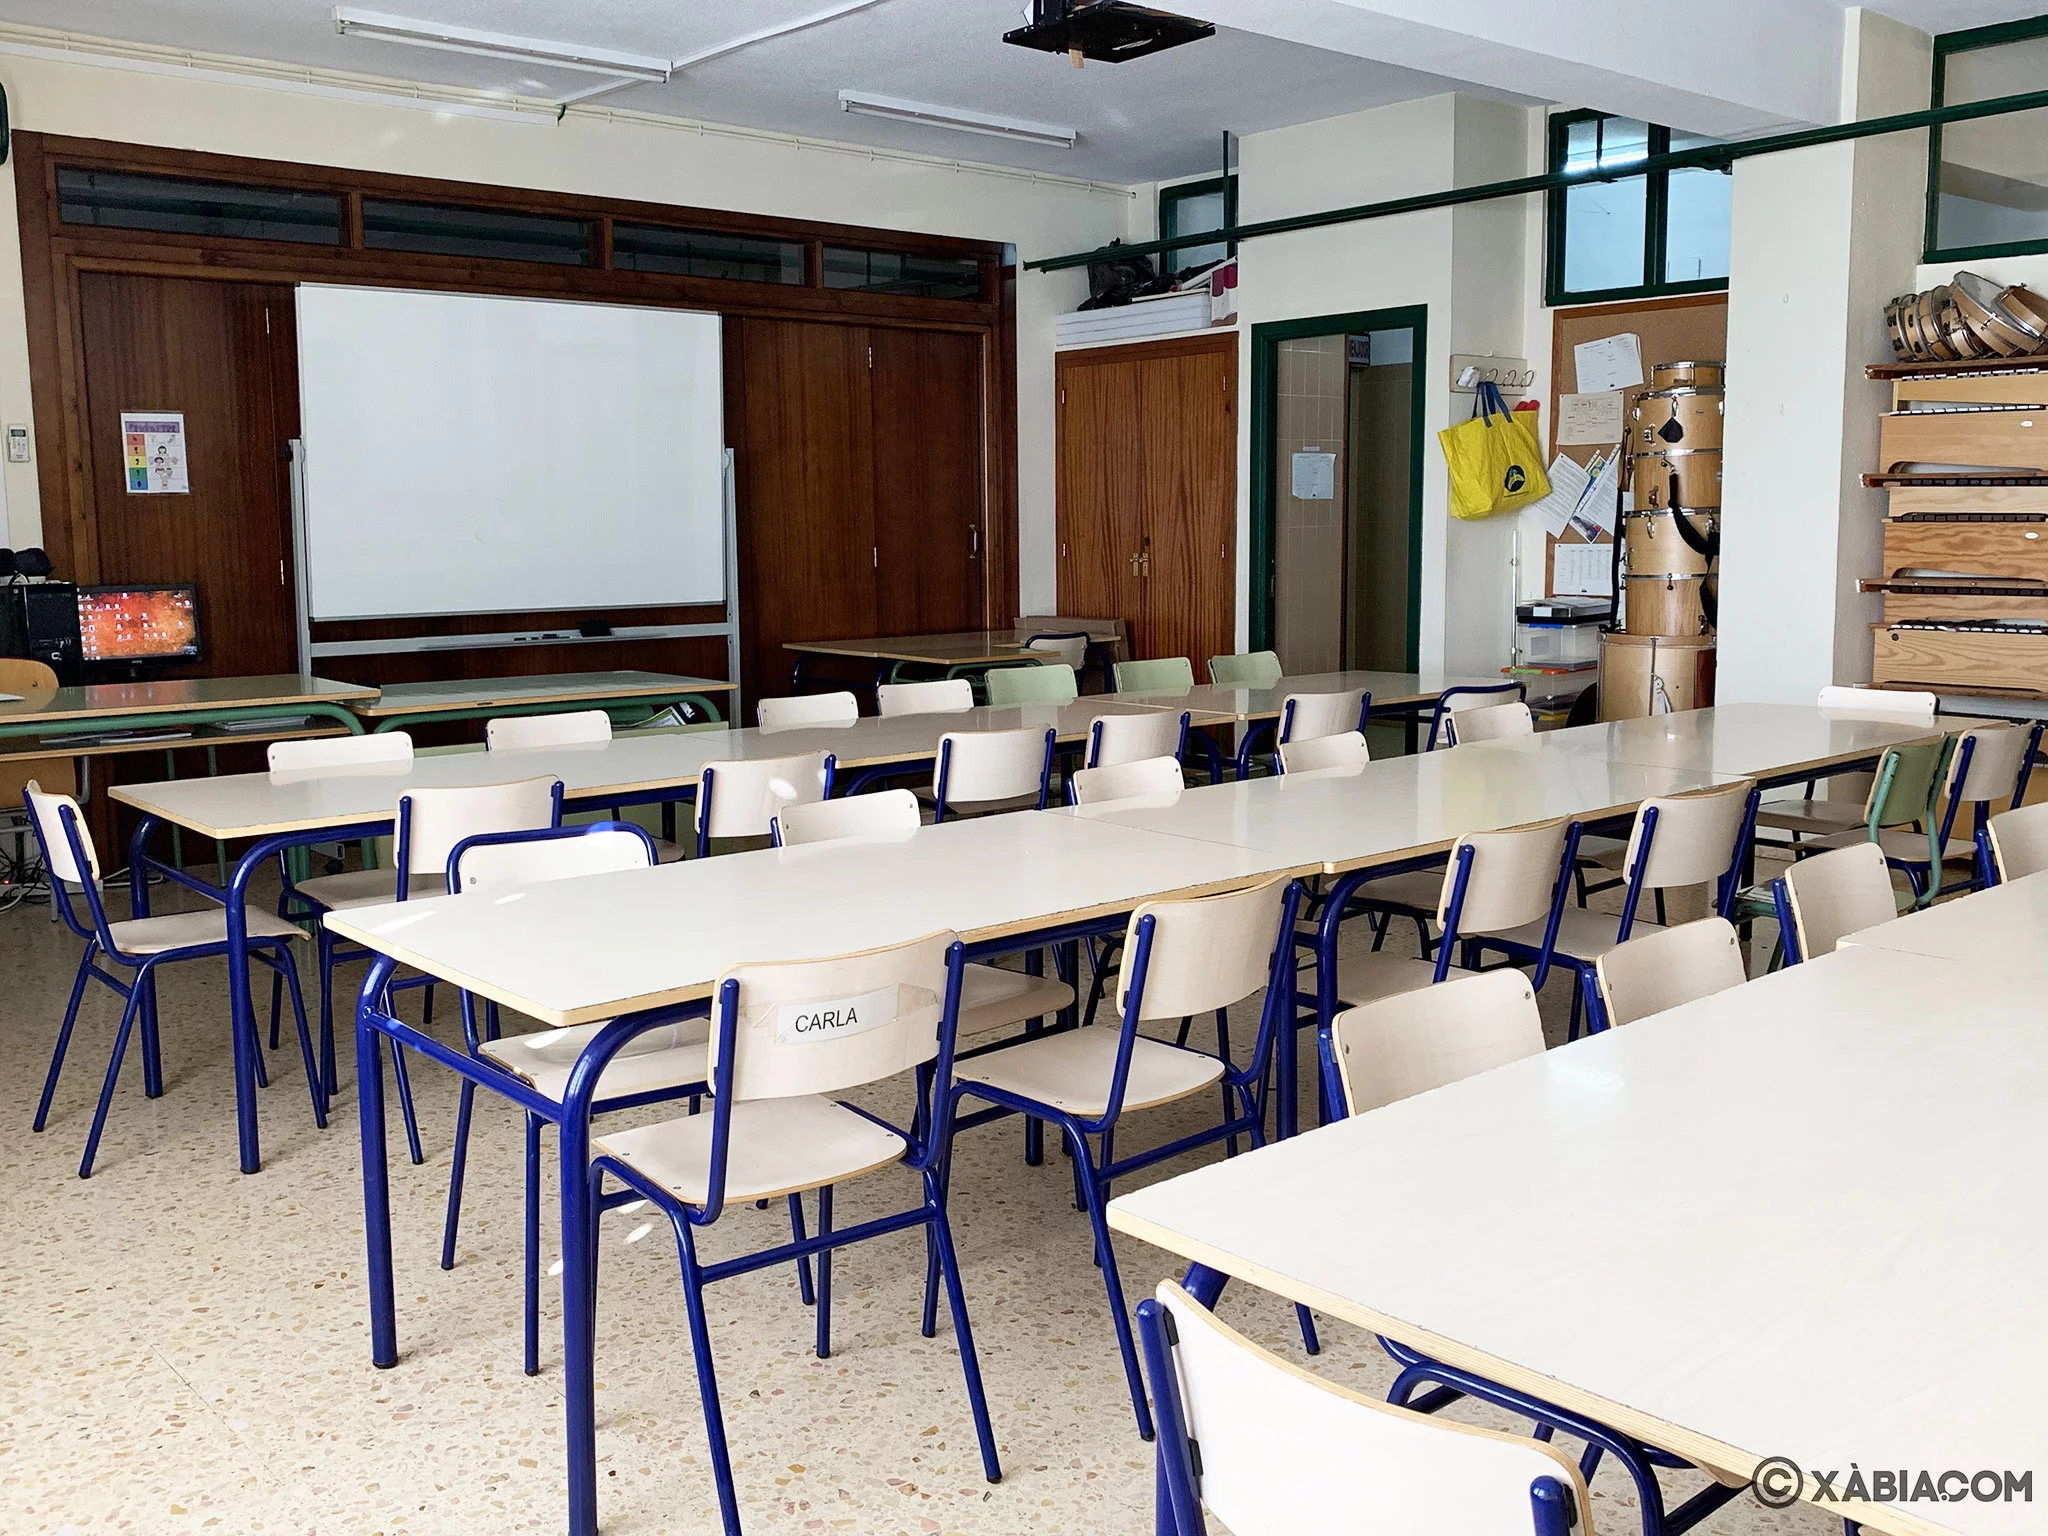 Vista general de un aula por dentro en el CEIP Trenc d’Alba de Xàbia